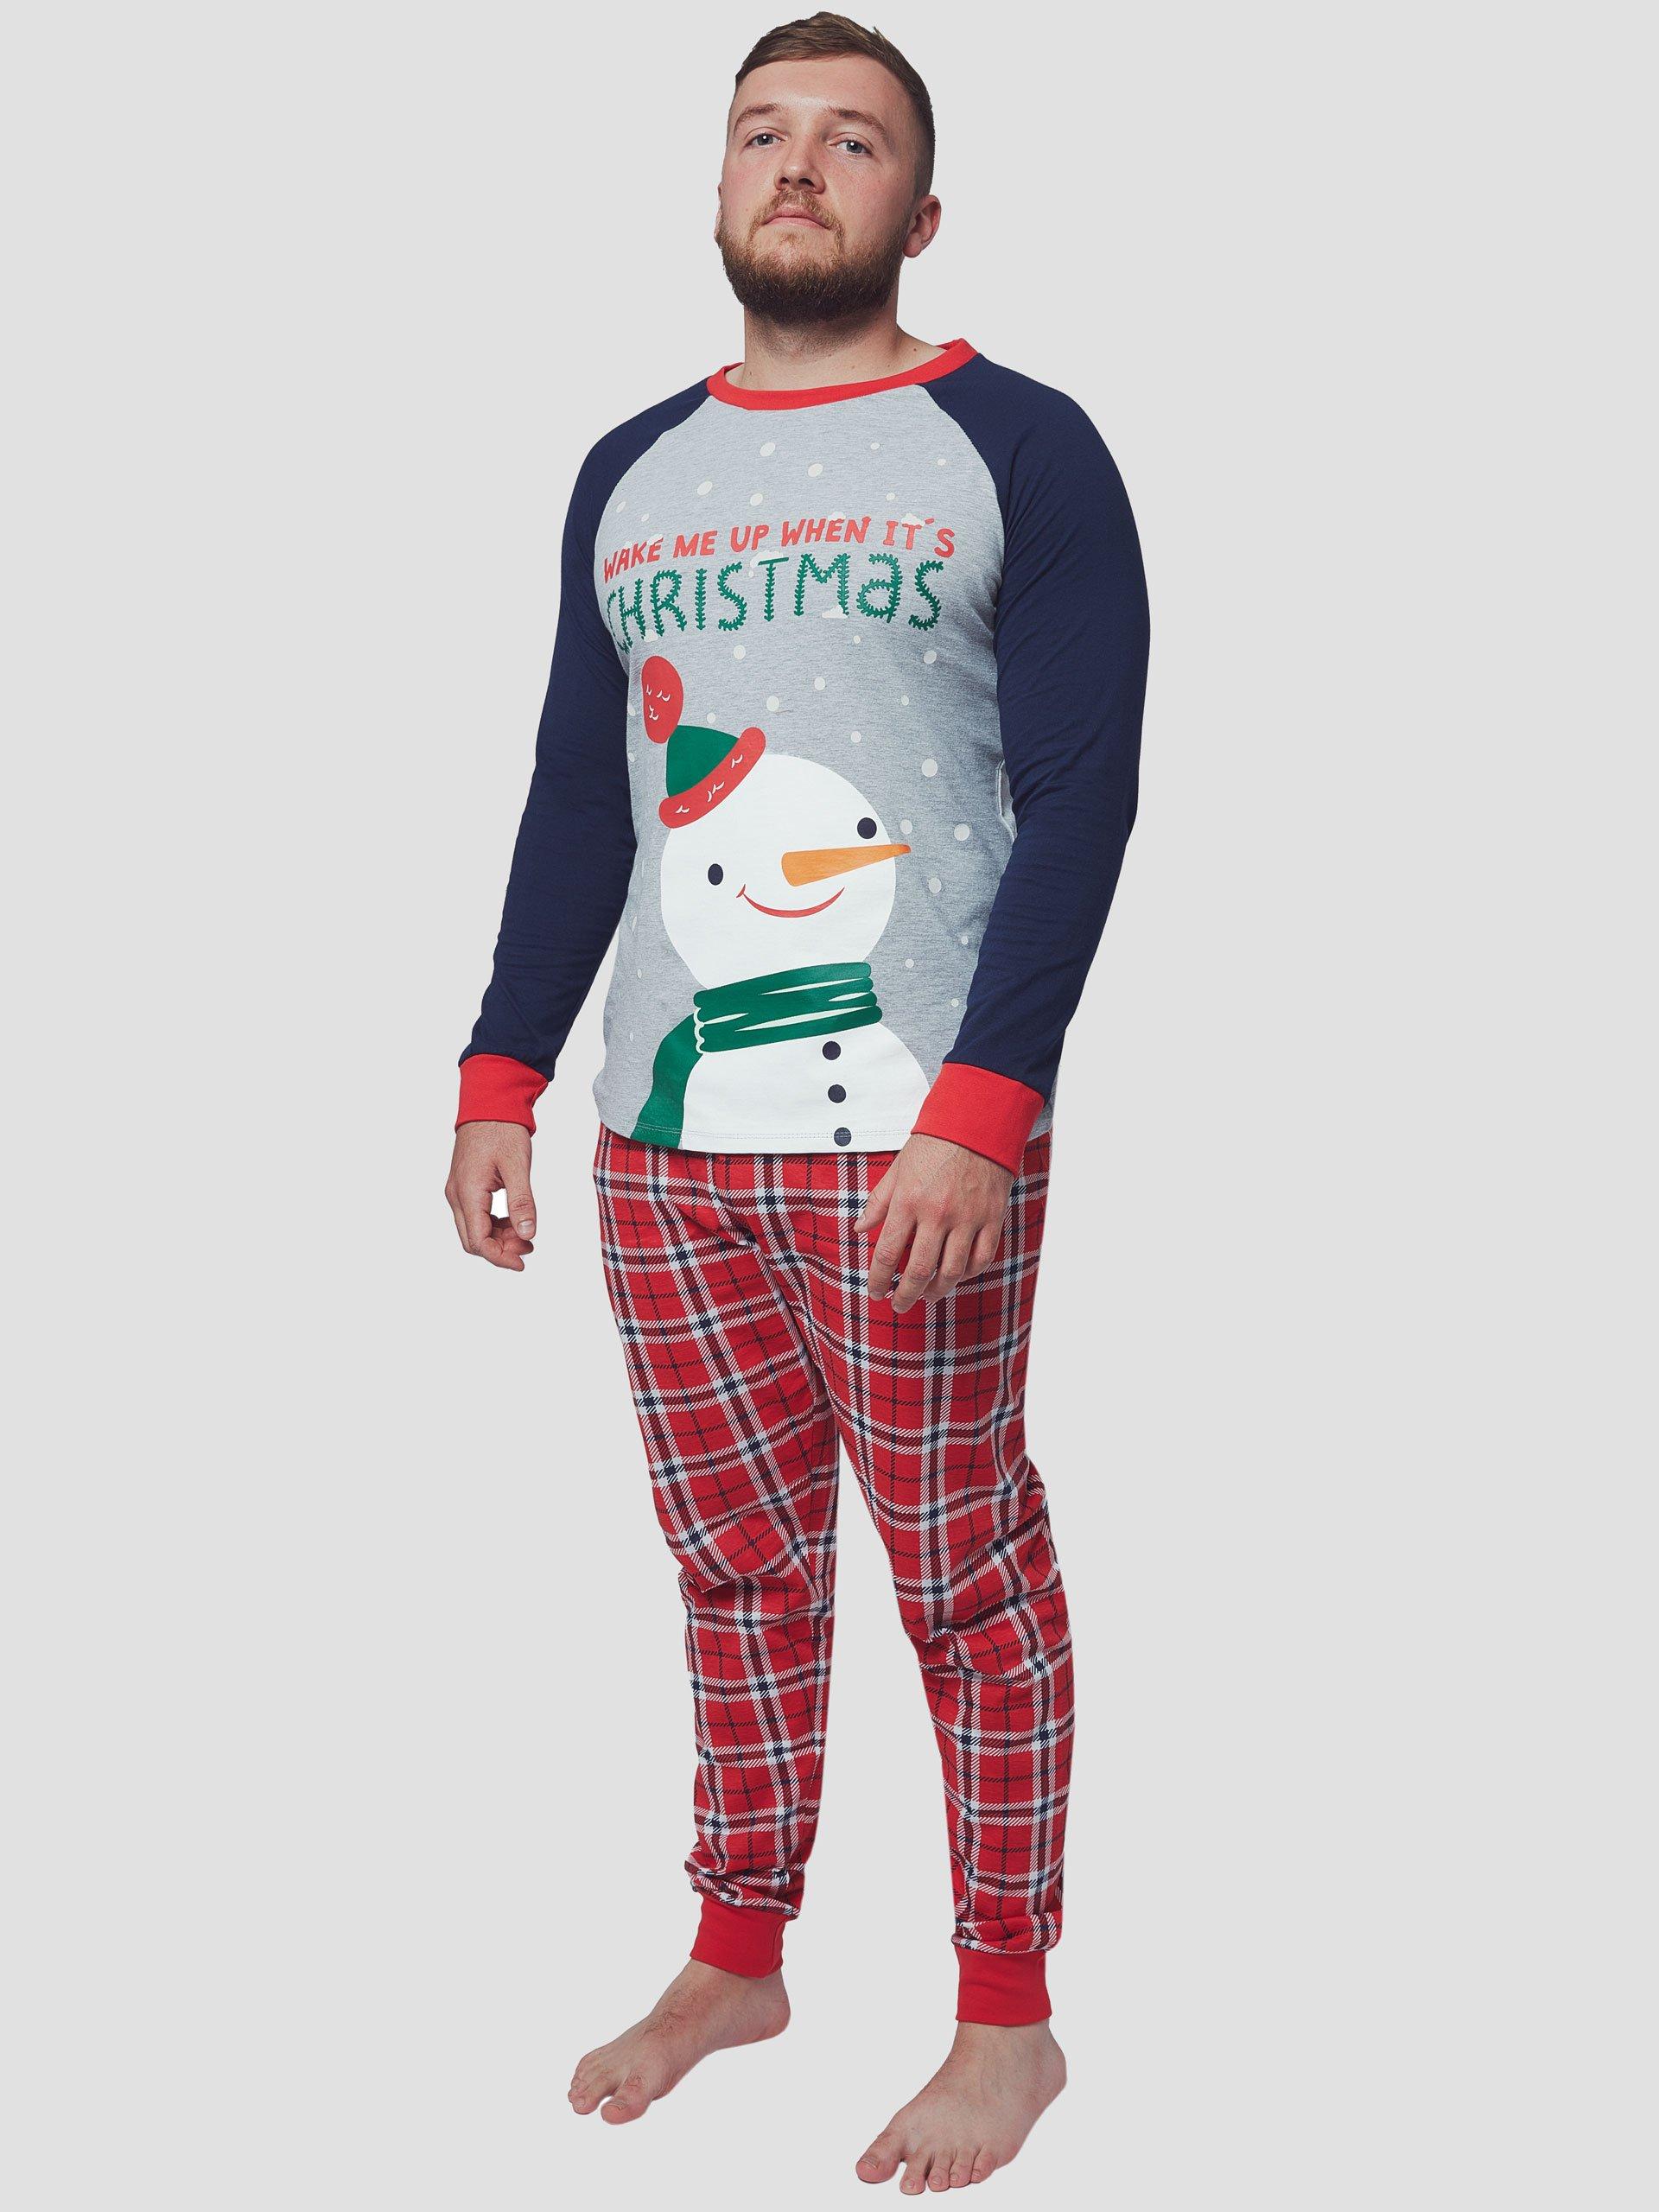 Mens Christmas Pyjamas